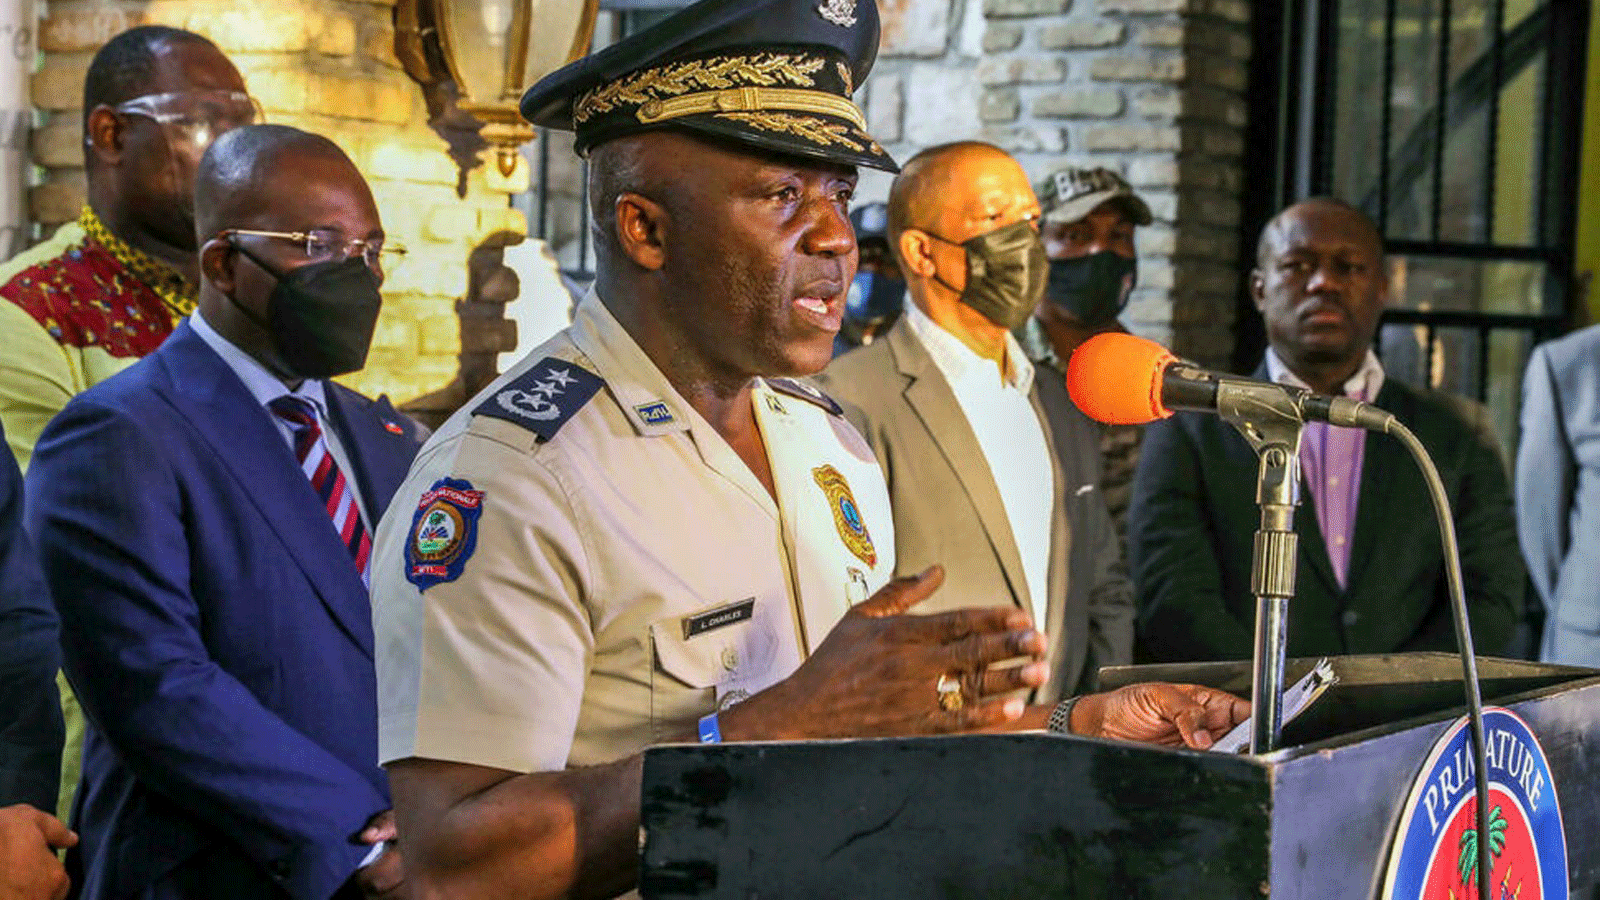 ليون تشارلز، مدير الشرطة الوطنية الهايتية، في مؤتمر صحفي في بورت أو برنس 11 تموز/يوليو 2021